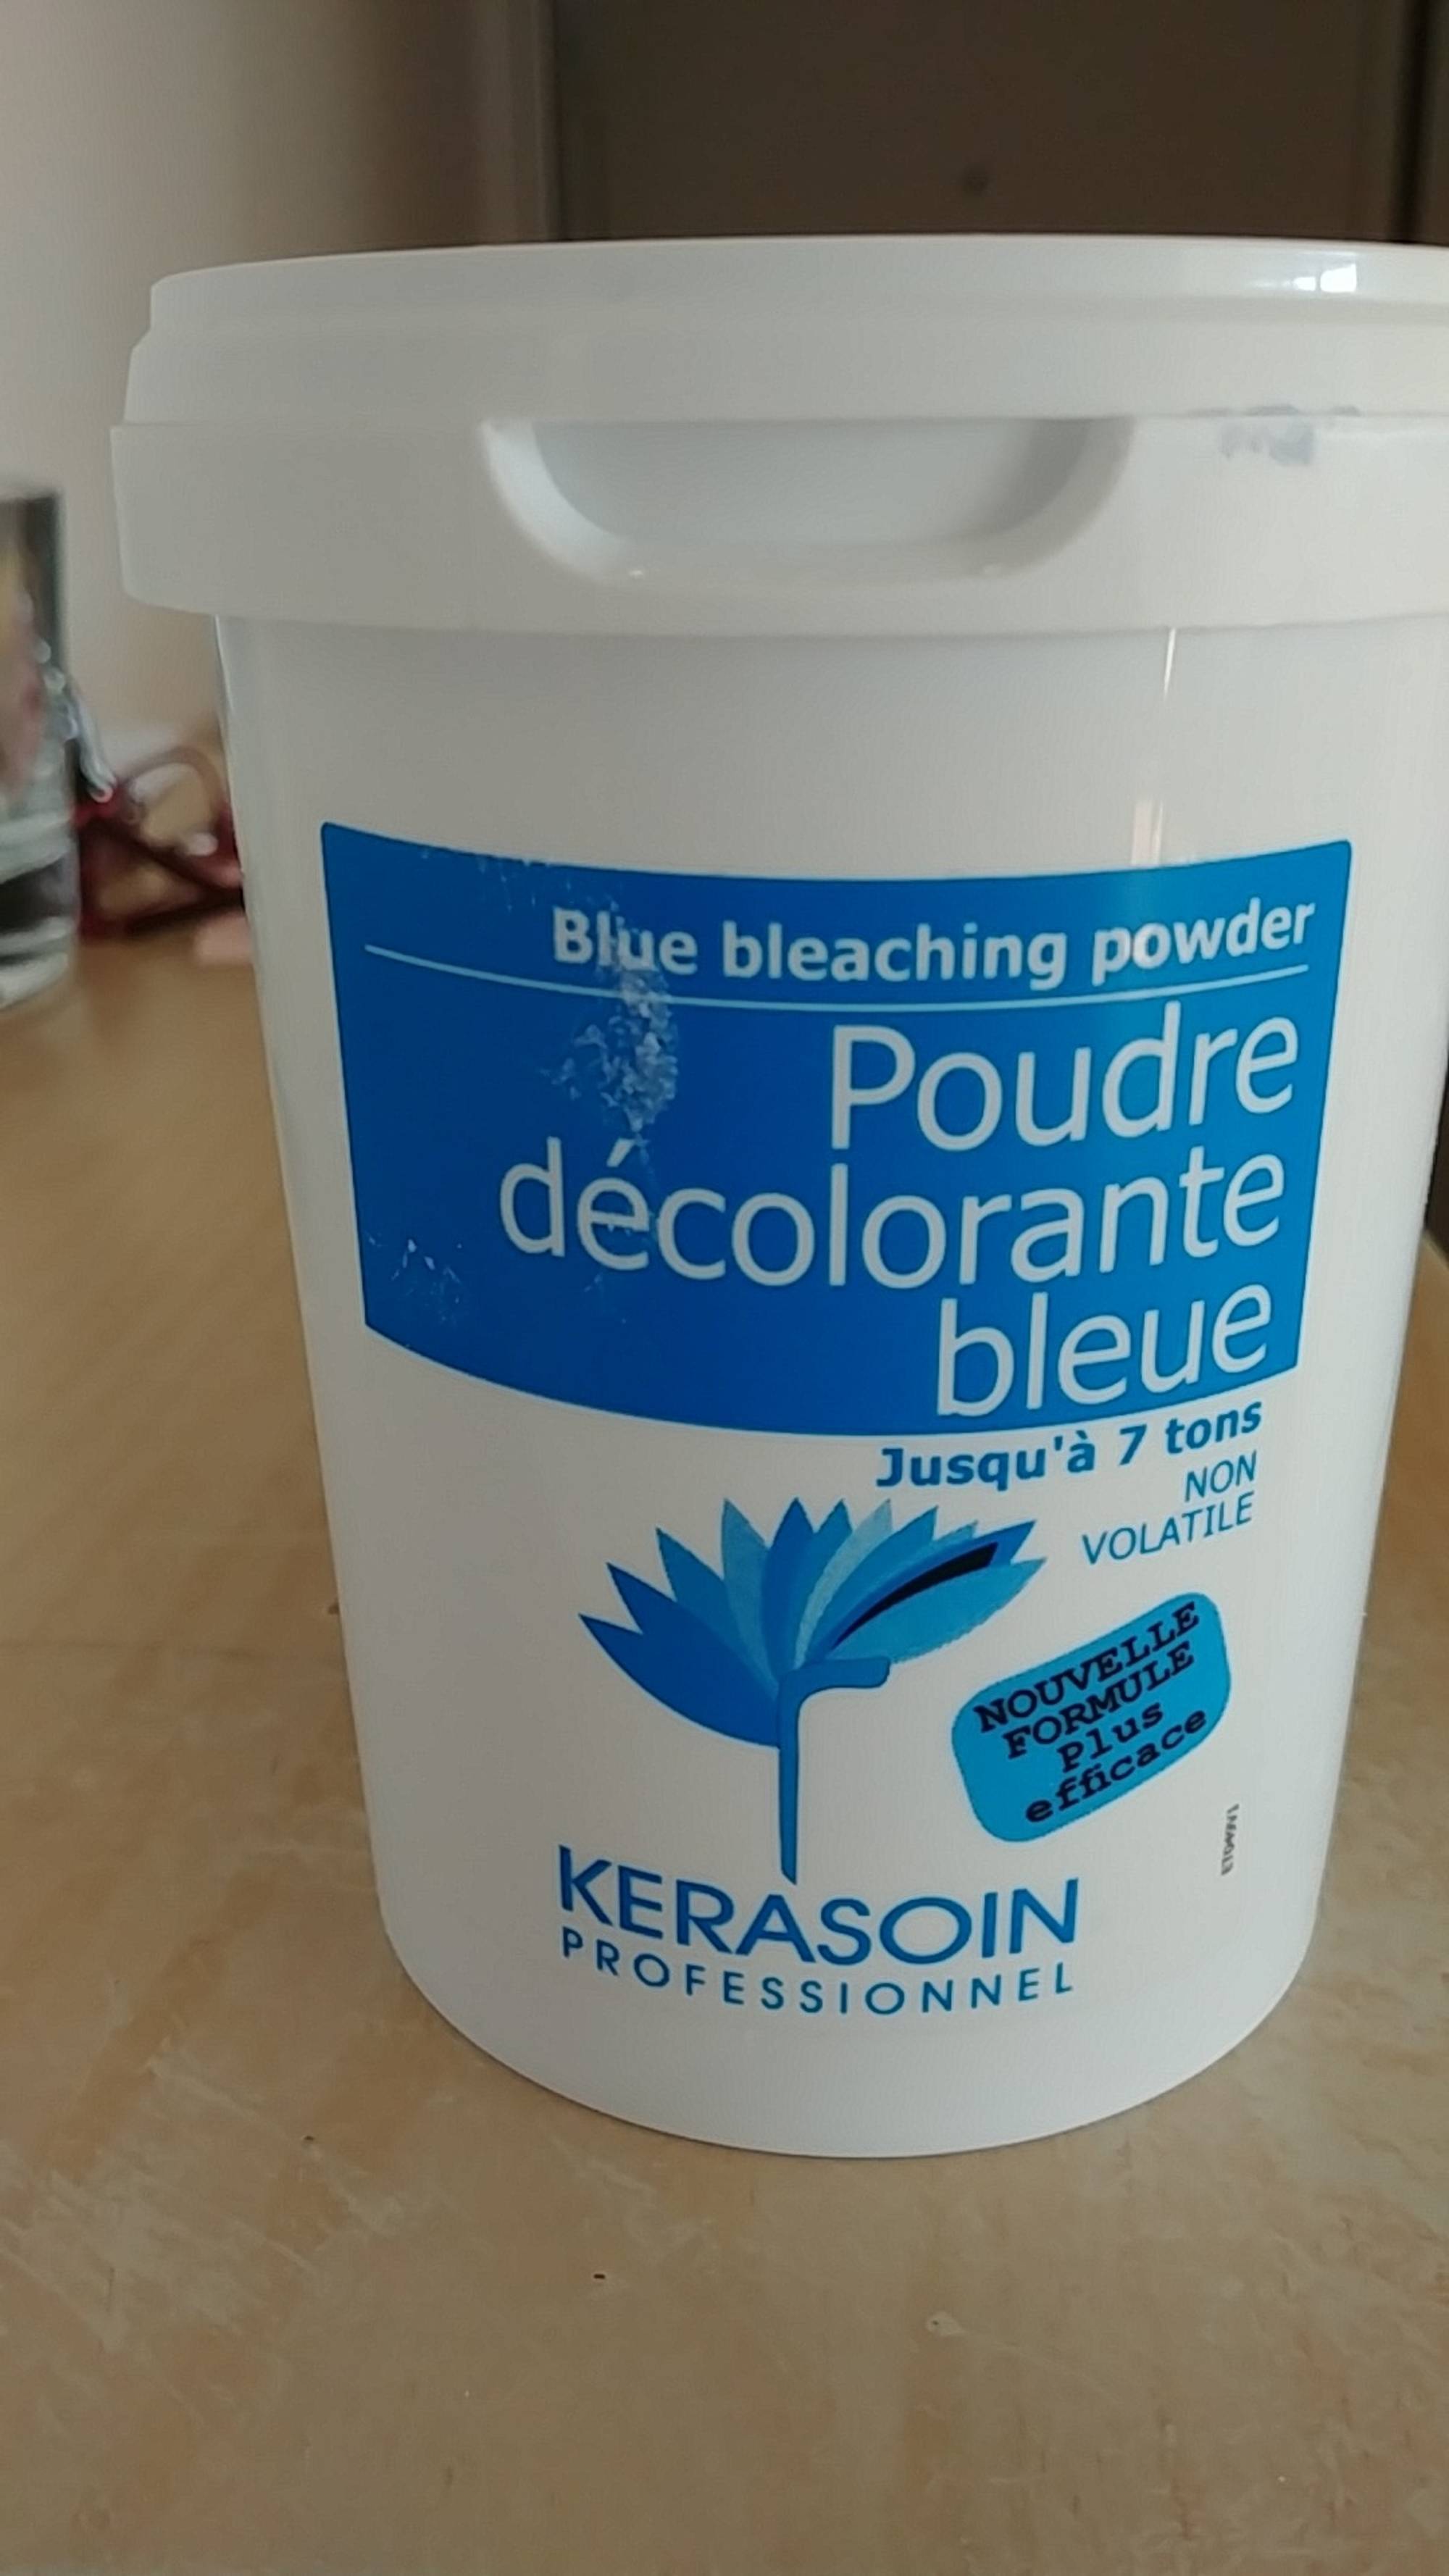 KERASOIN PROFESSIONNEL - Poudre décolorante bleue